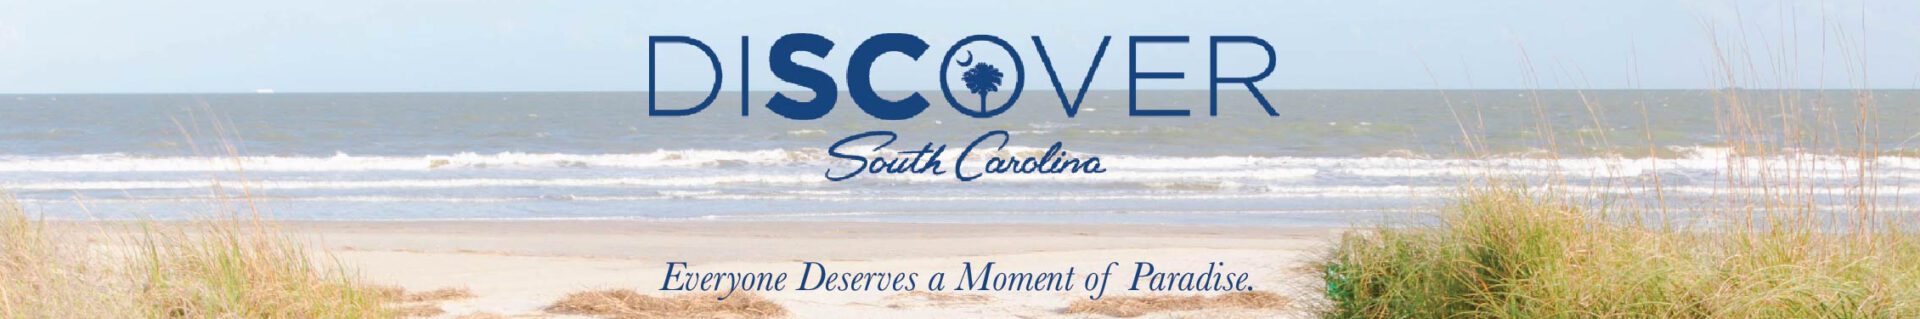 Discover South Carolina ad